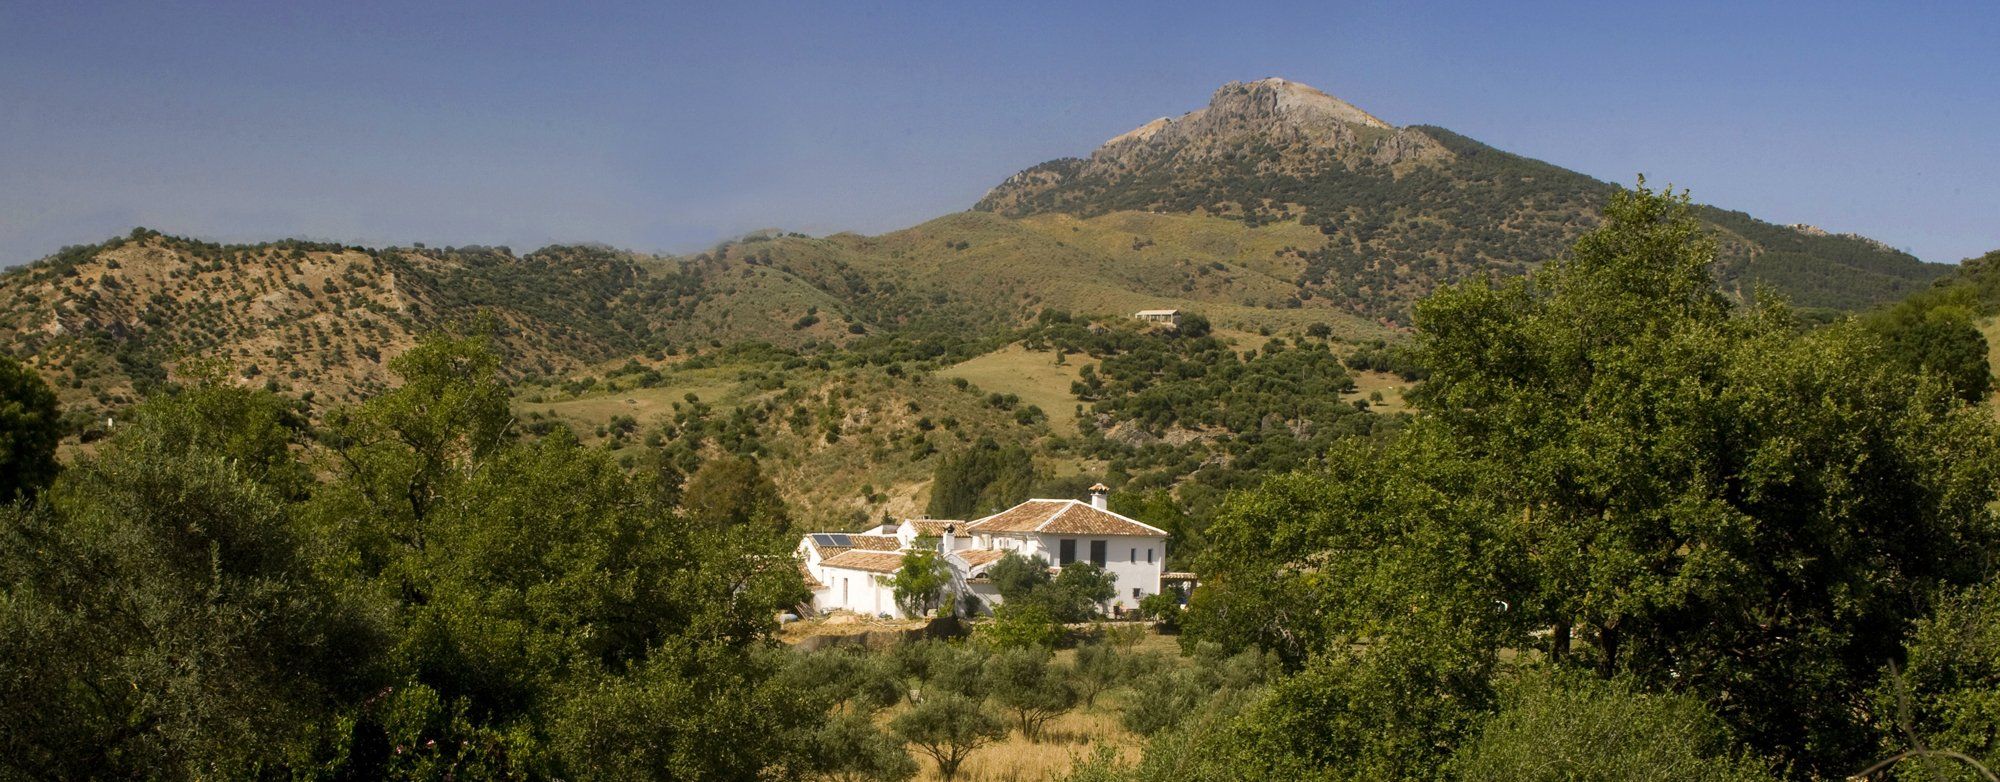 villas andalucia